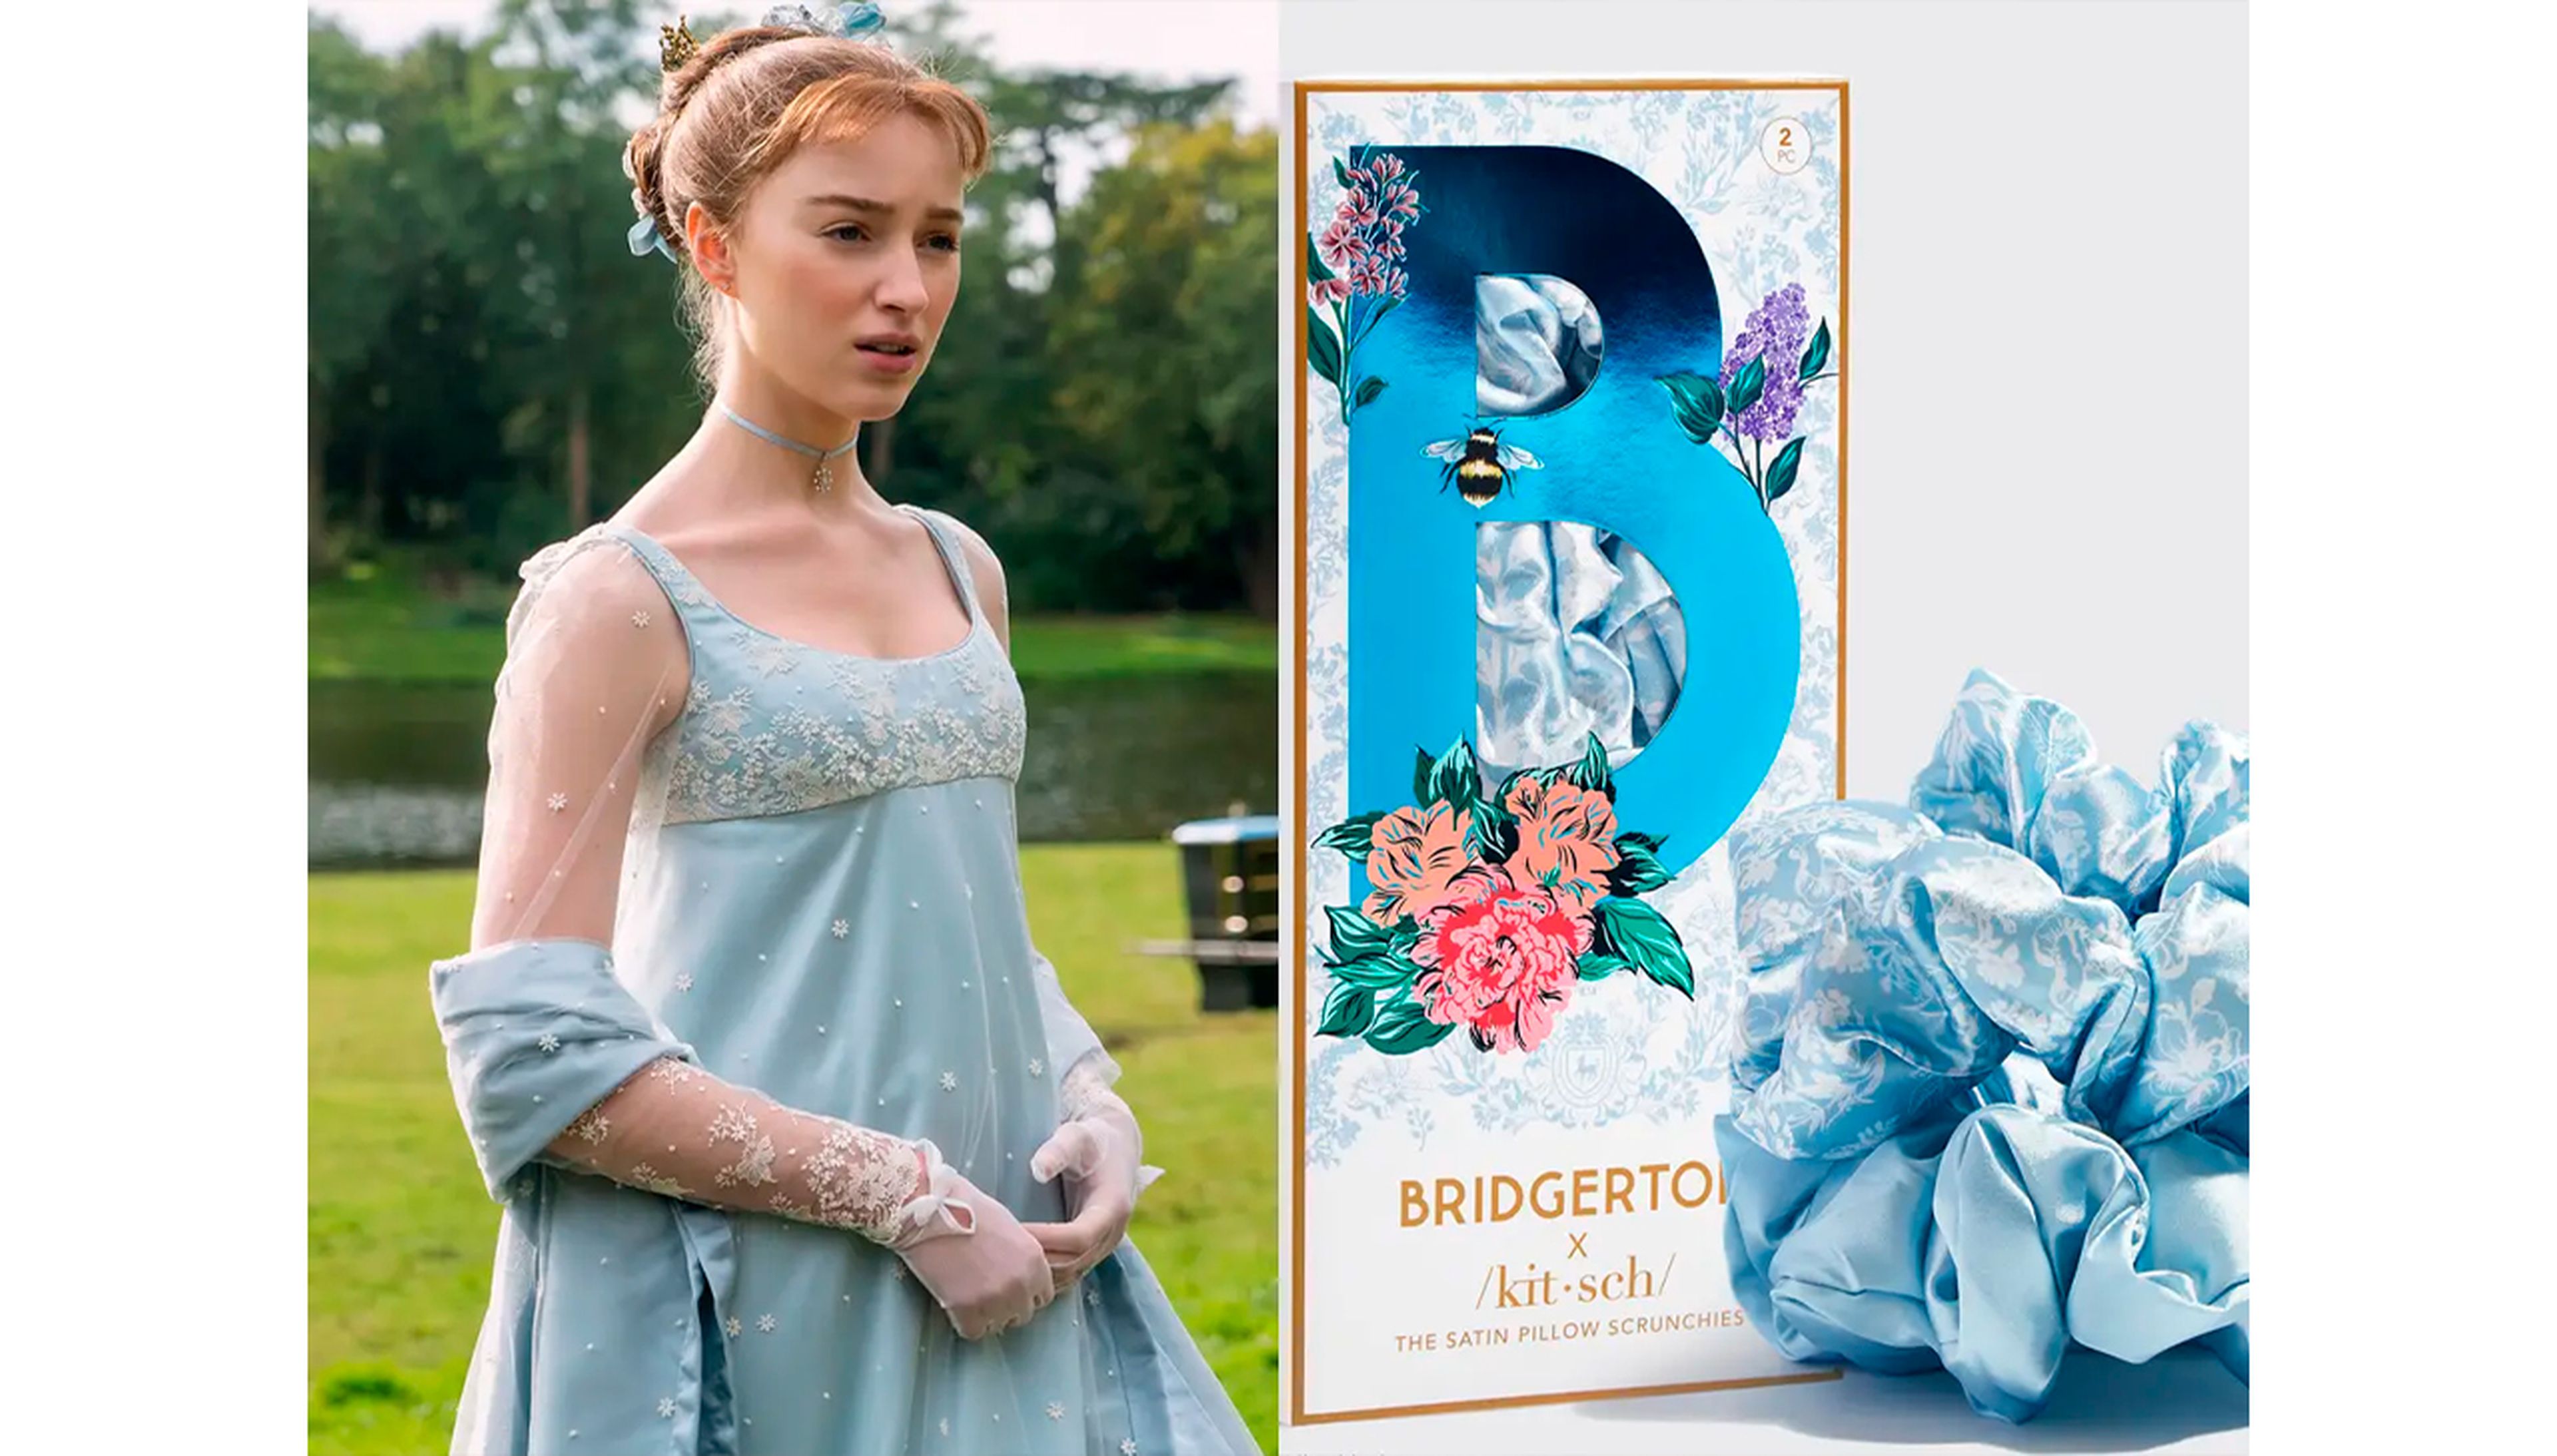 La última colaboración de Kitsch en 'Los Bridgerton' se inspira en uno de los vestidos de Daphne de la primera temporada de la serie.